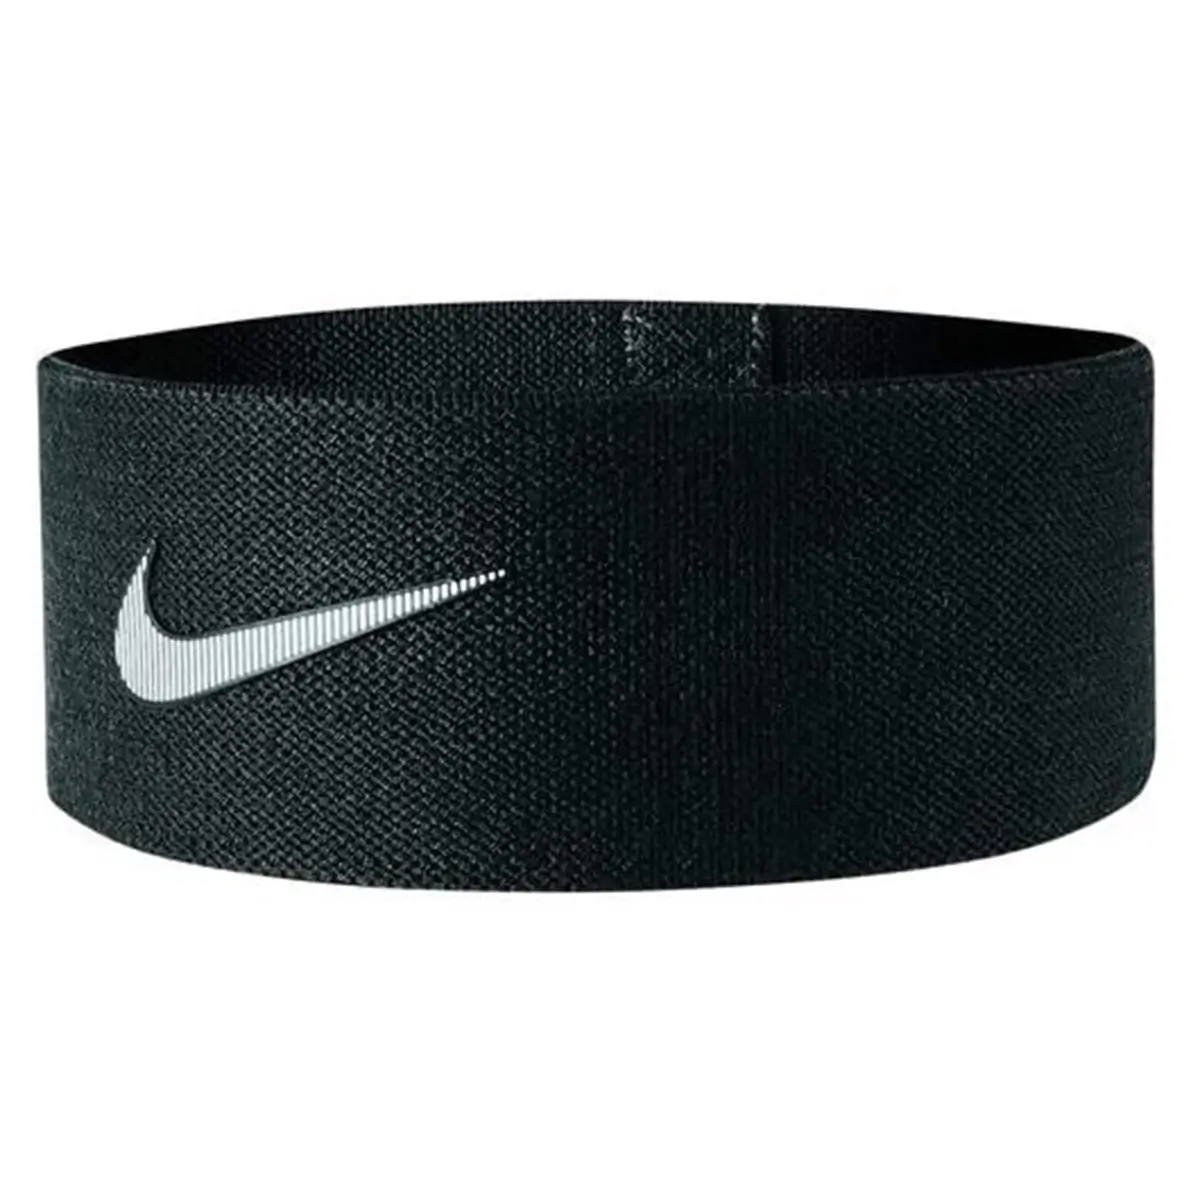 Nike Resıstance Loop Siyah S Unisex Direnç Bandı - N.000.0012.010.SL